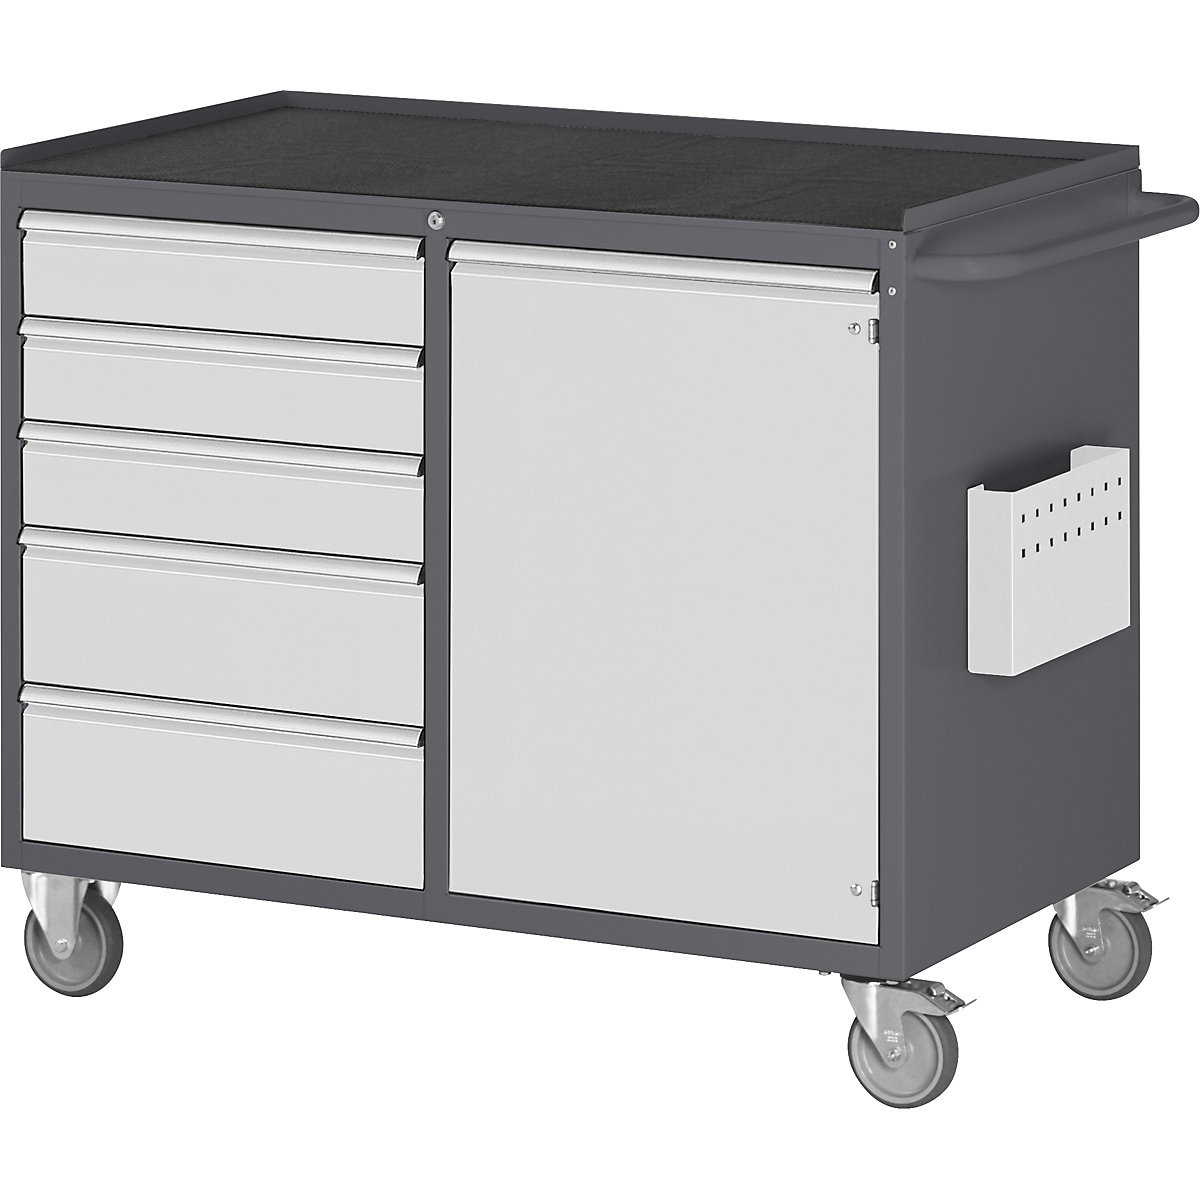 Bancadas de trabalho compactas, móveis – RAU, 5 gavetas, 1 porta, tabuleiro metálico com esteira de borracha, antracite / cinzento claro-4